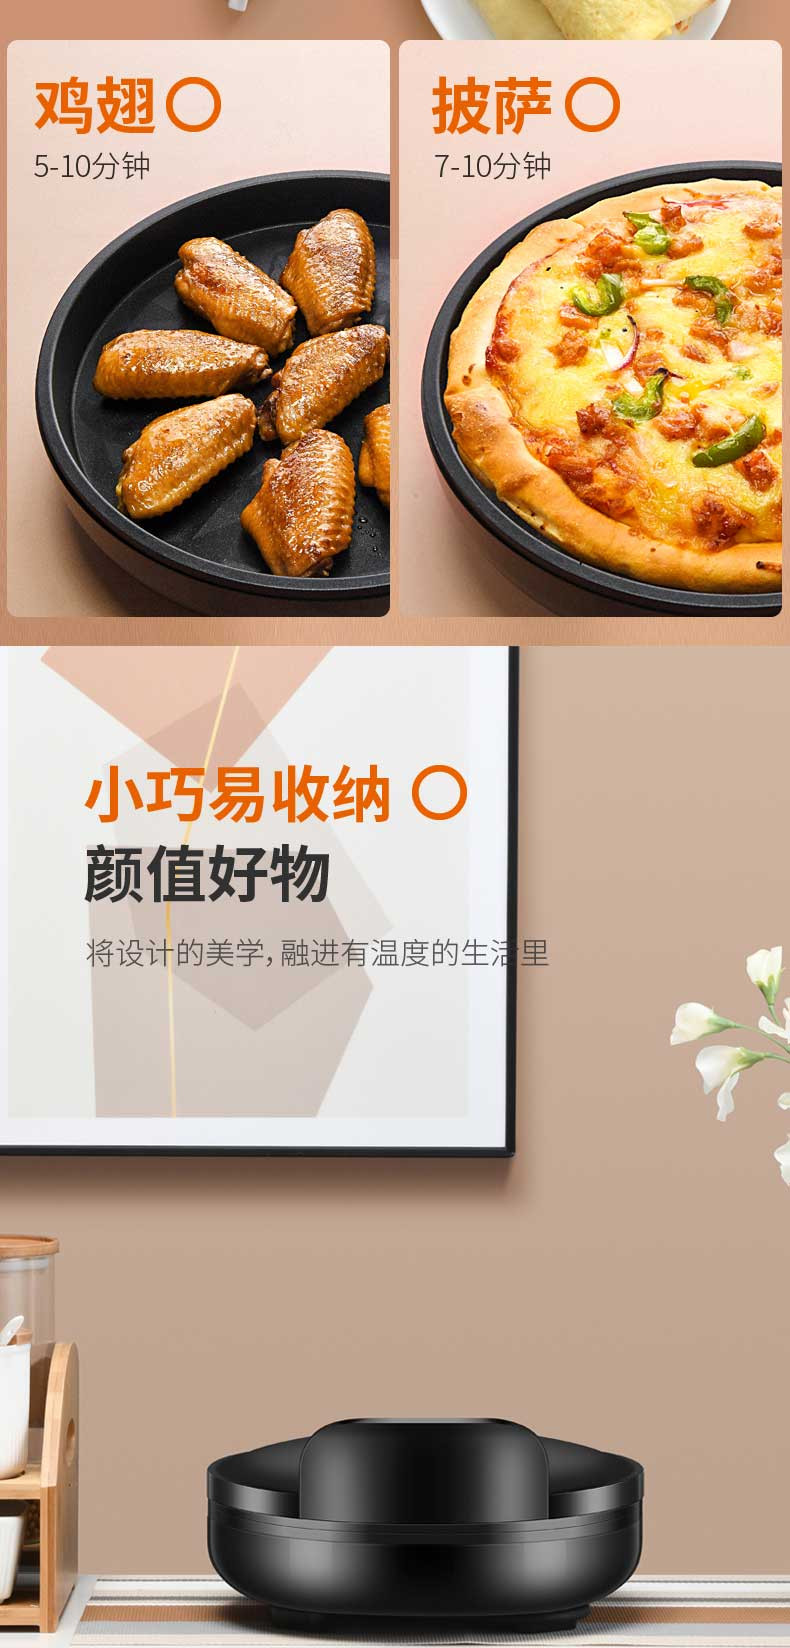 九阳(Joyoung)电饼铛家用煎饼机双面加热蛋糕烙饼锅电饼档JK-30K09S